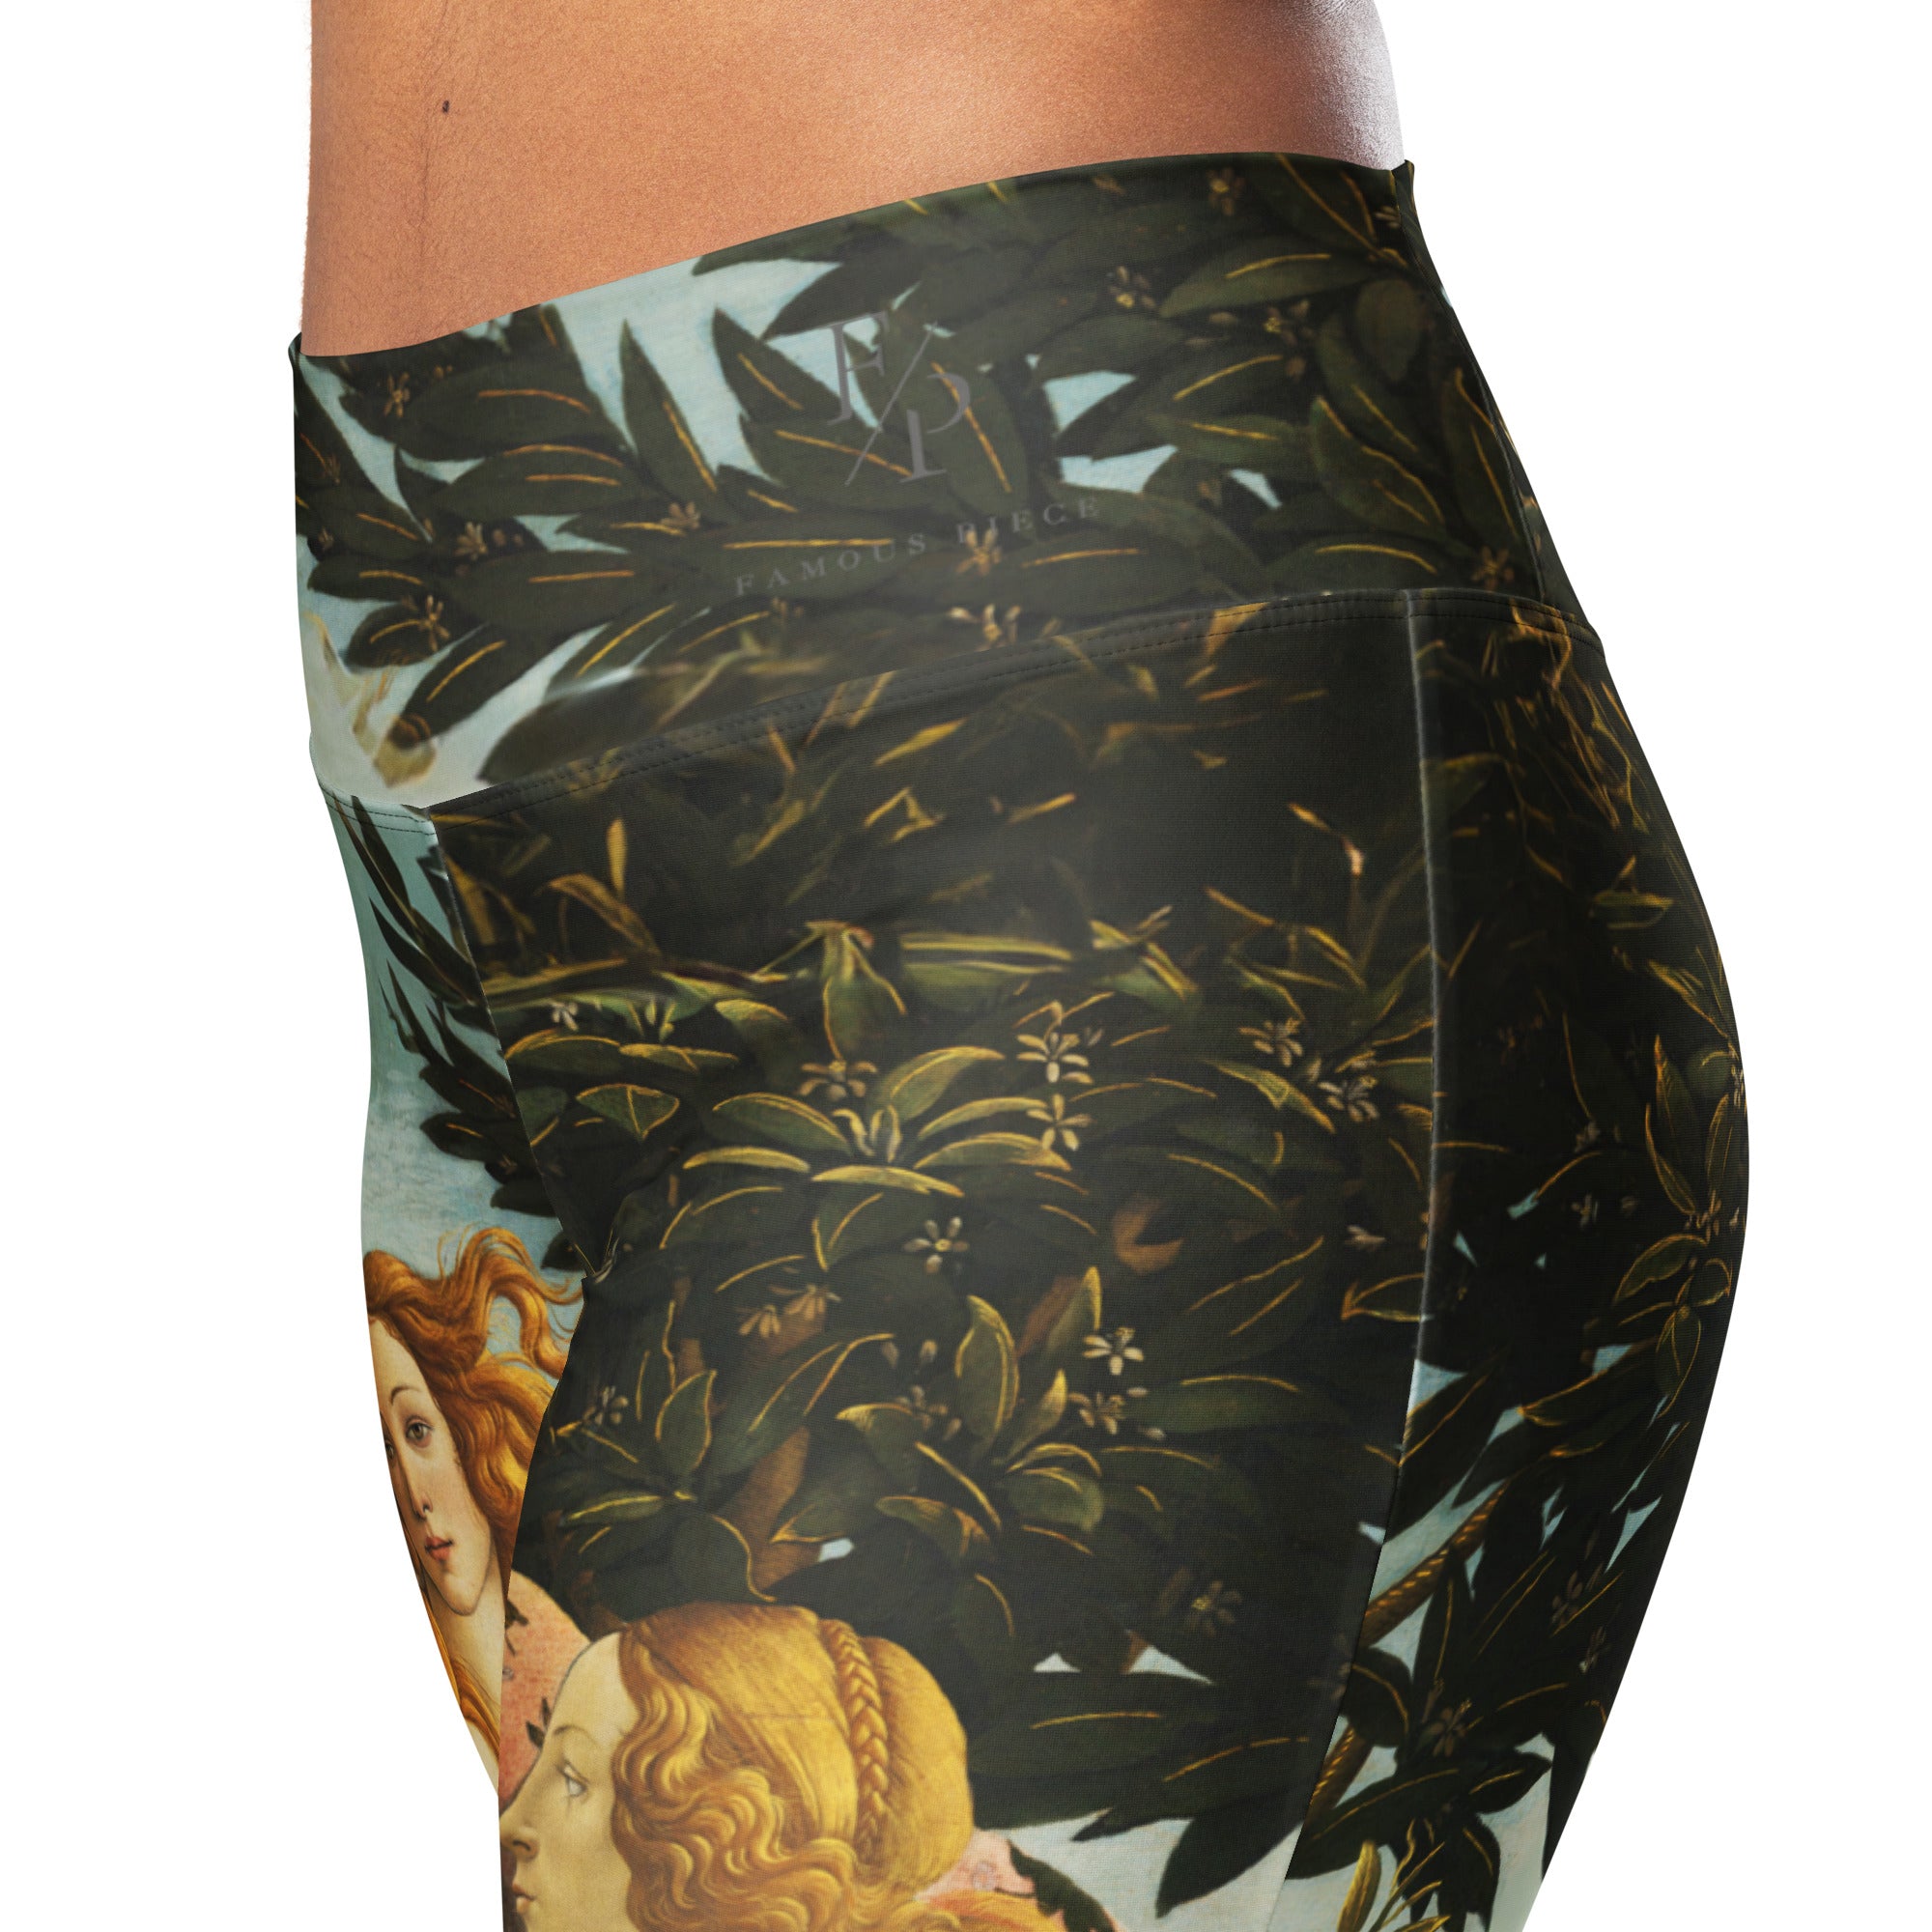 Sandro Botticelli 'Primavera' Famous Painting Flare Leggings | Premium Art Flare Leggings